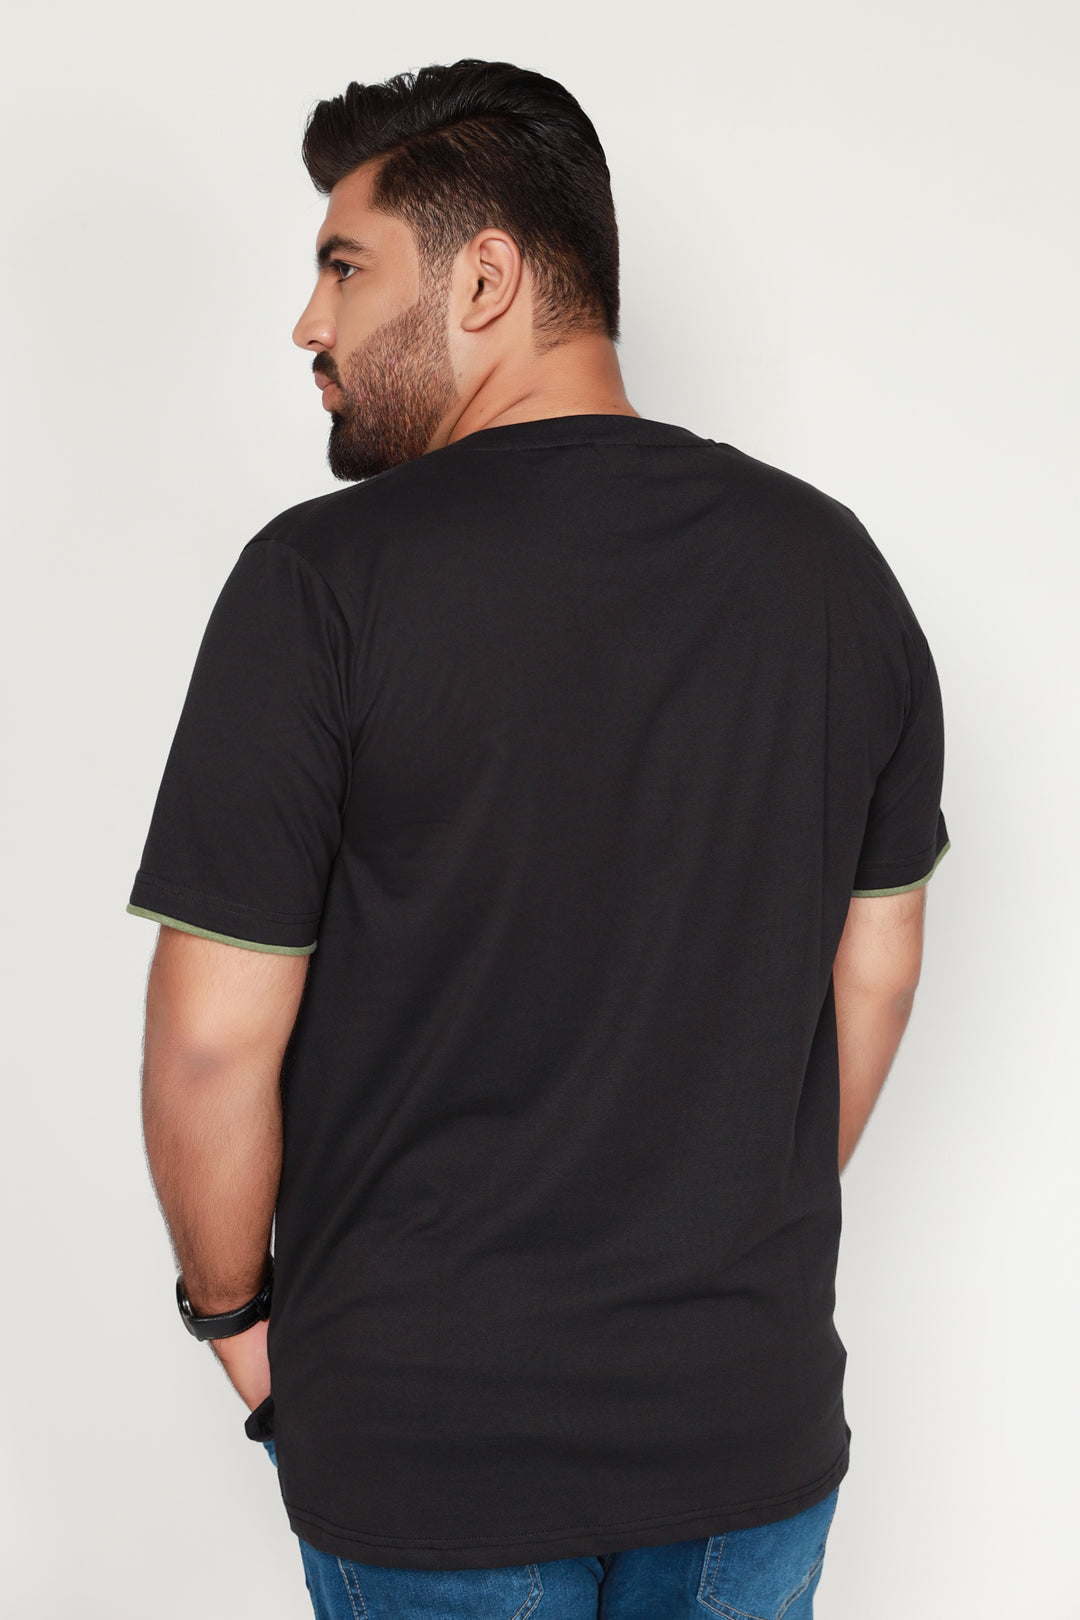 Black Mock Neckline T-Shirt (Plus Size) - S22 - MT0182P